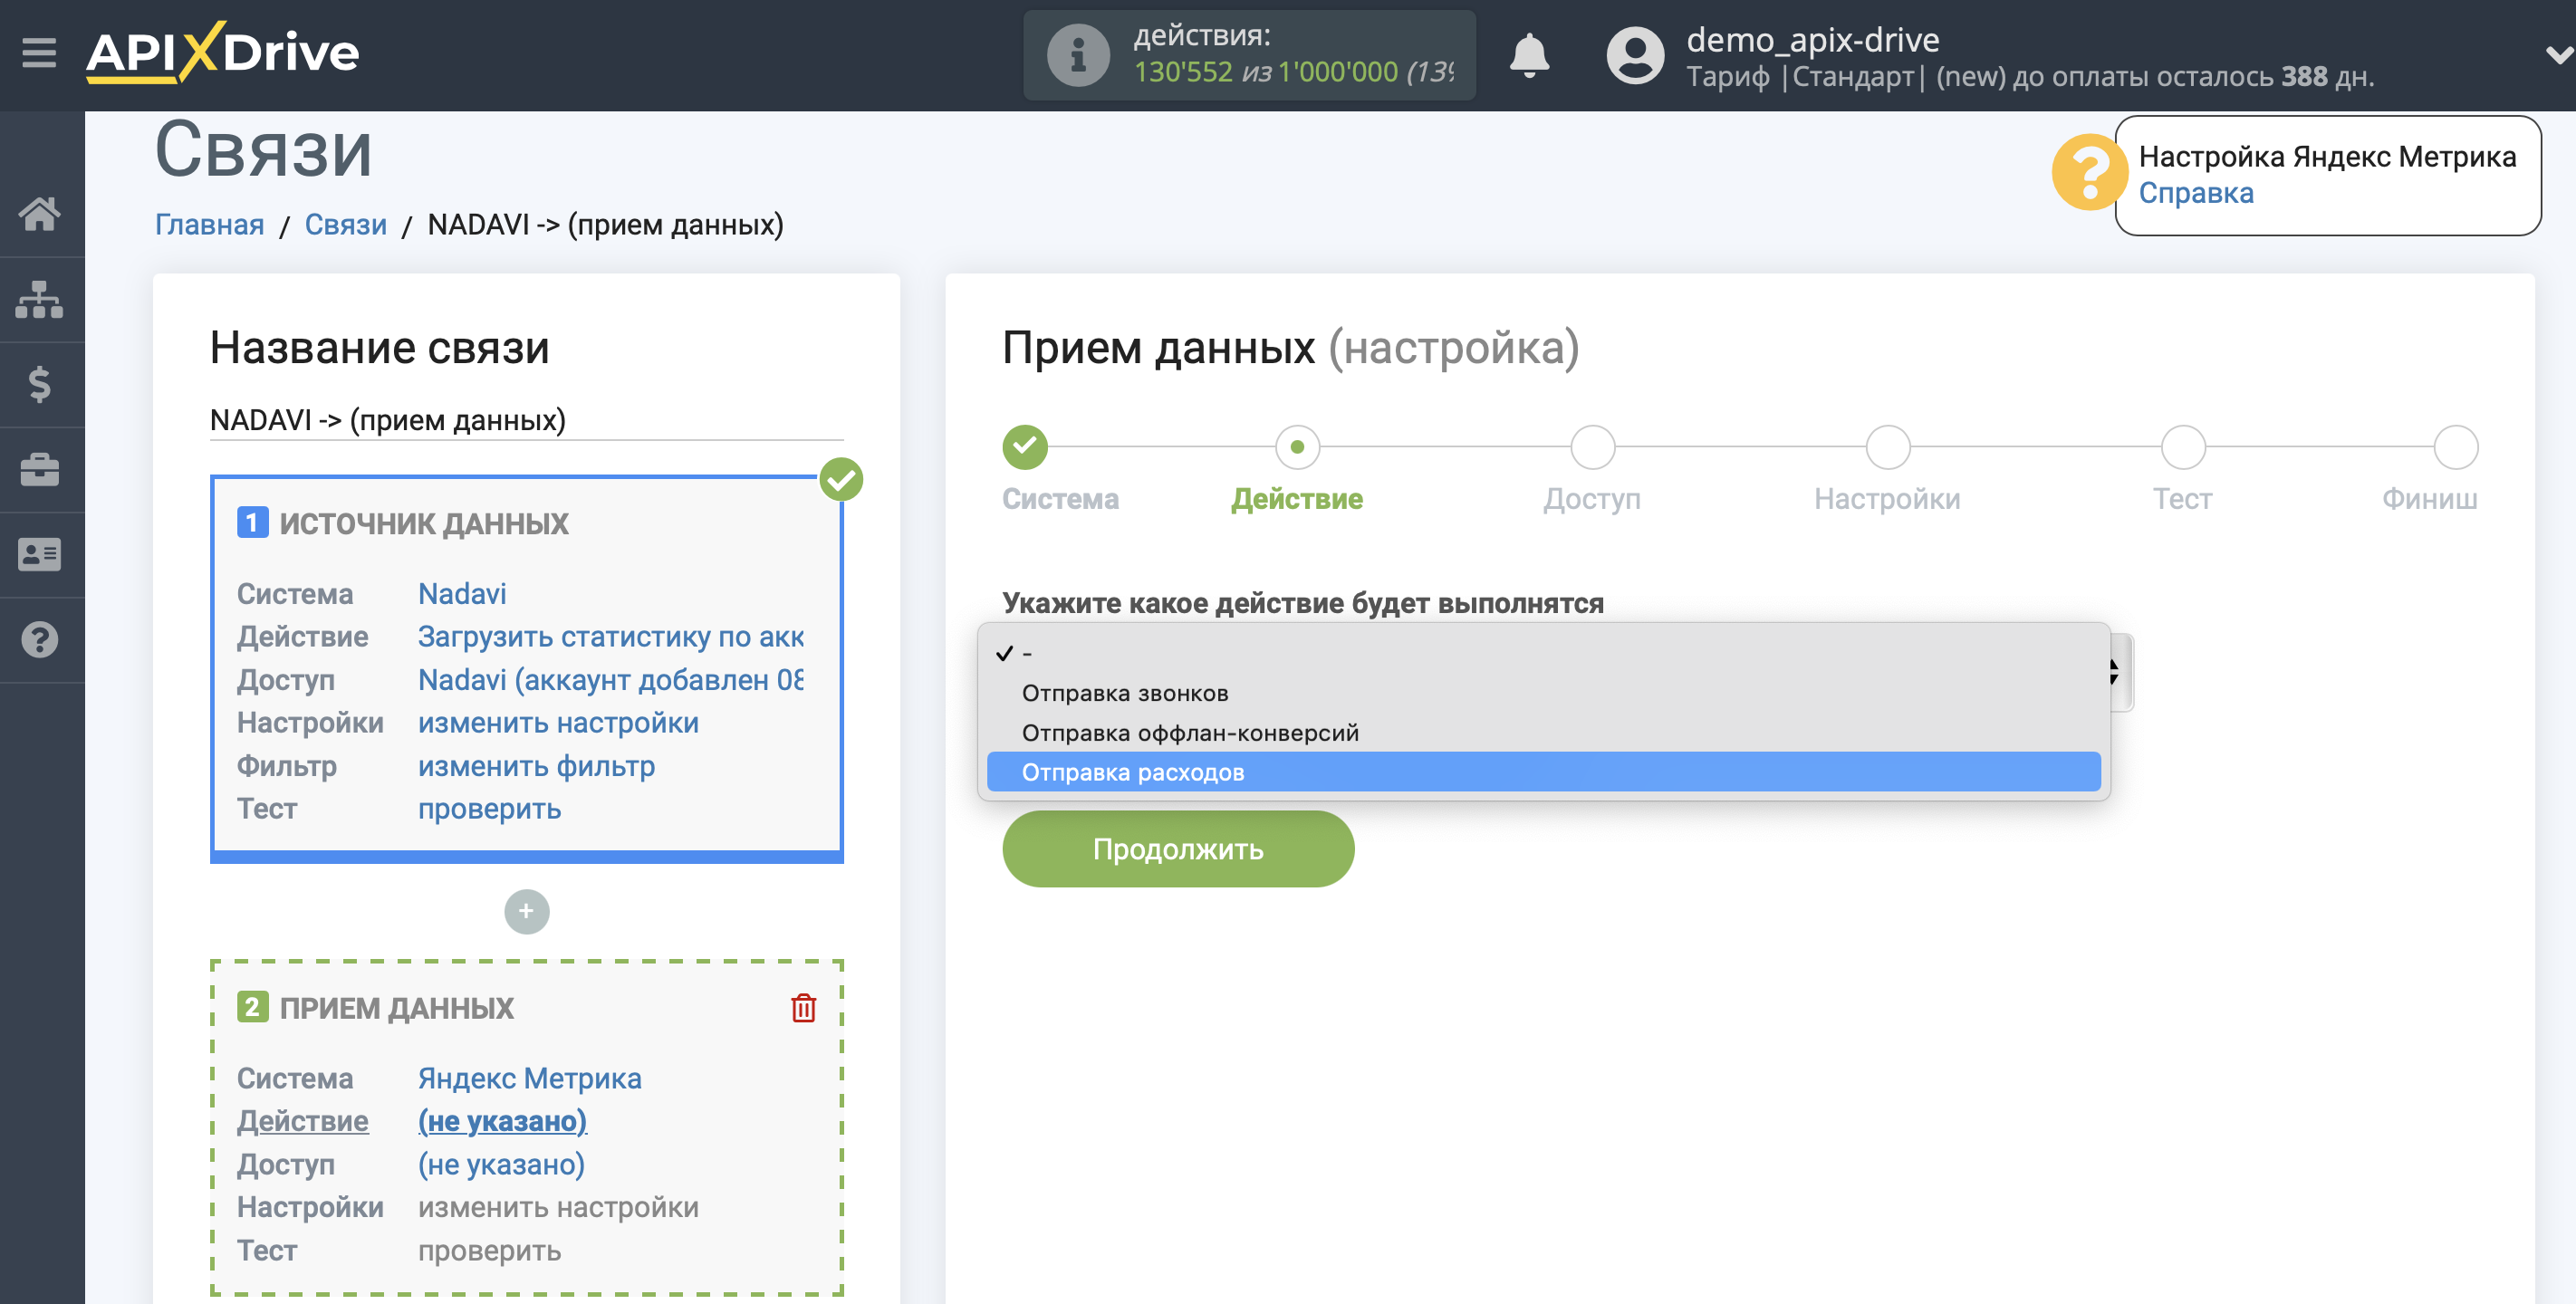 Импорт данных по расходам из Nadavi в Яндекс.Метрику | Выбор действия в системе приема данных